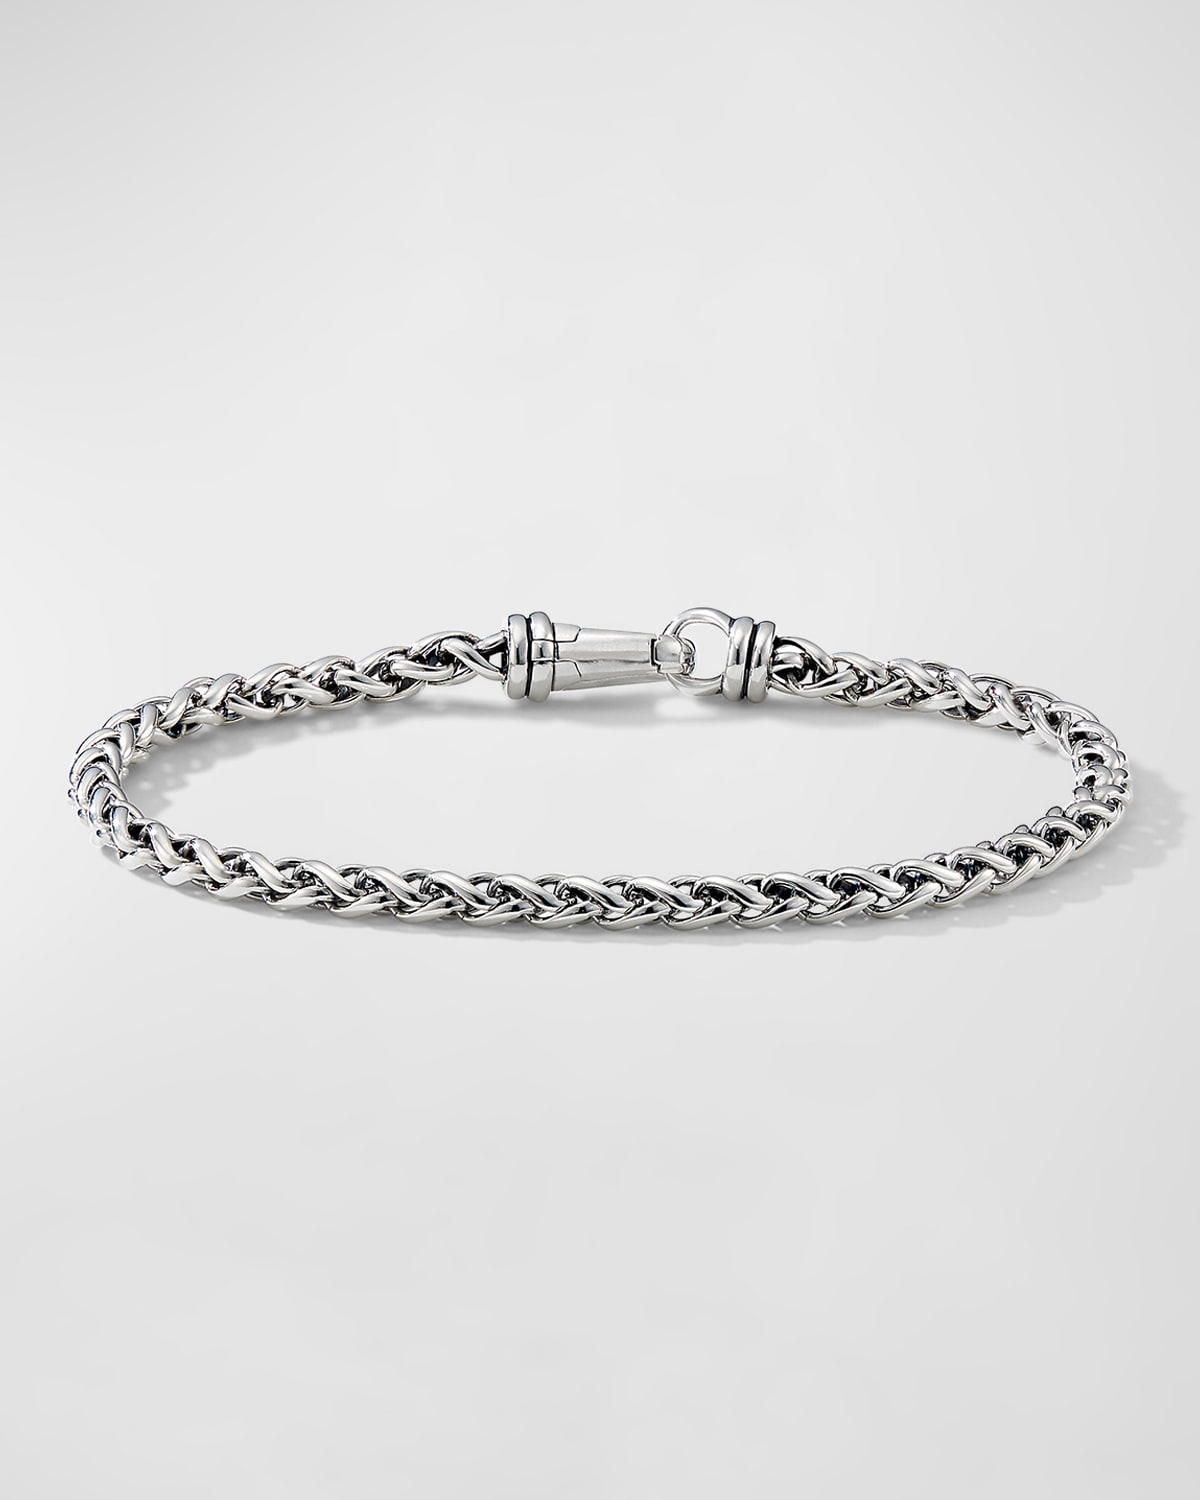 David Yurman Men's Wheat Chain Bracelet In Sterling Silver, 4mm, 5.5"l